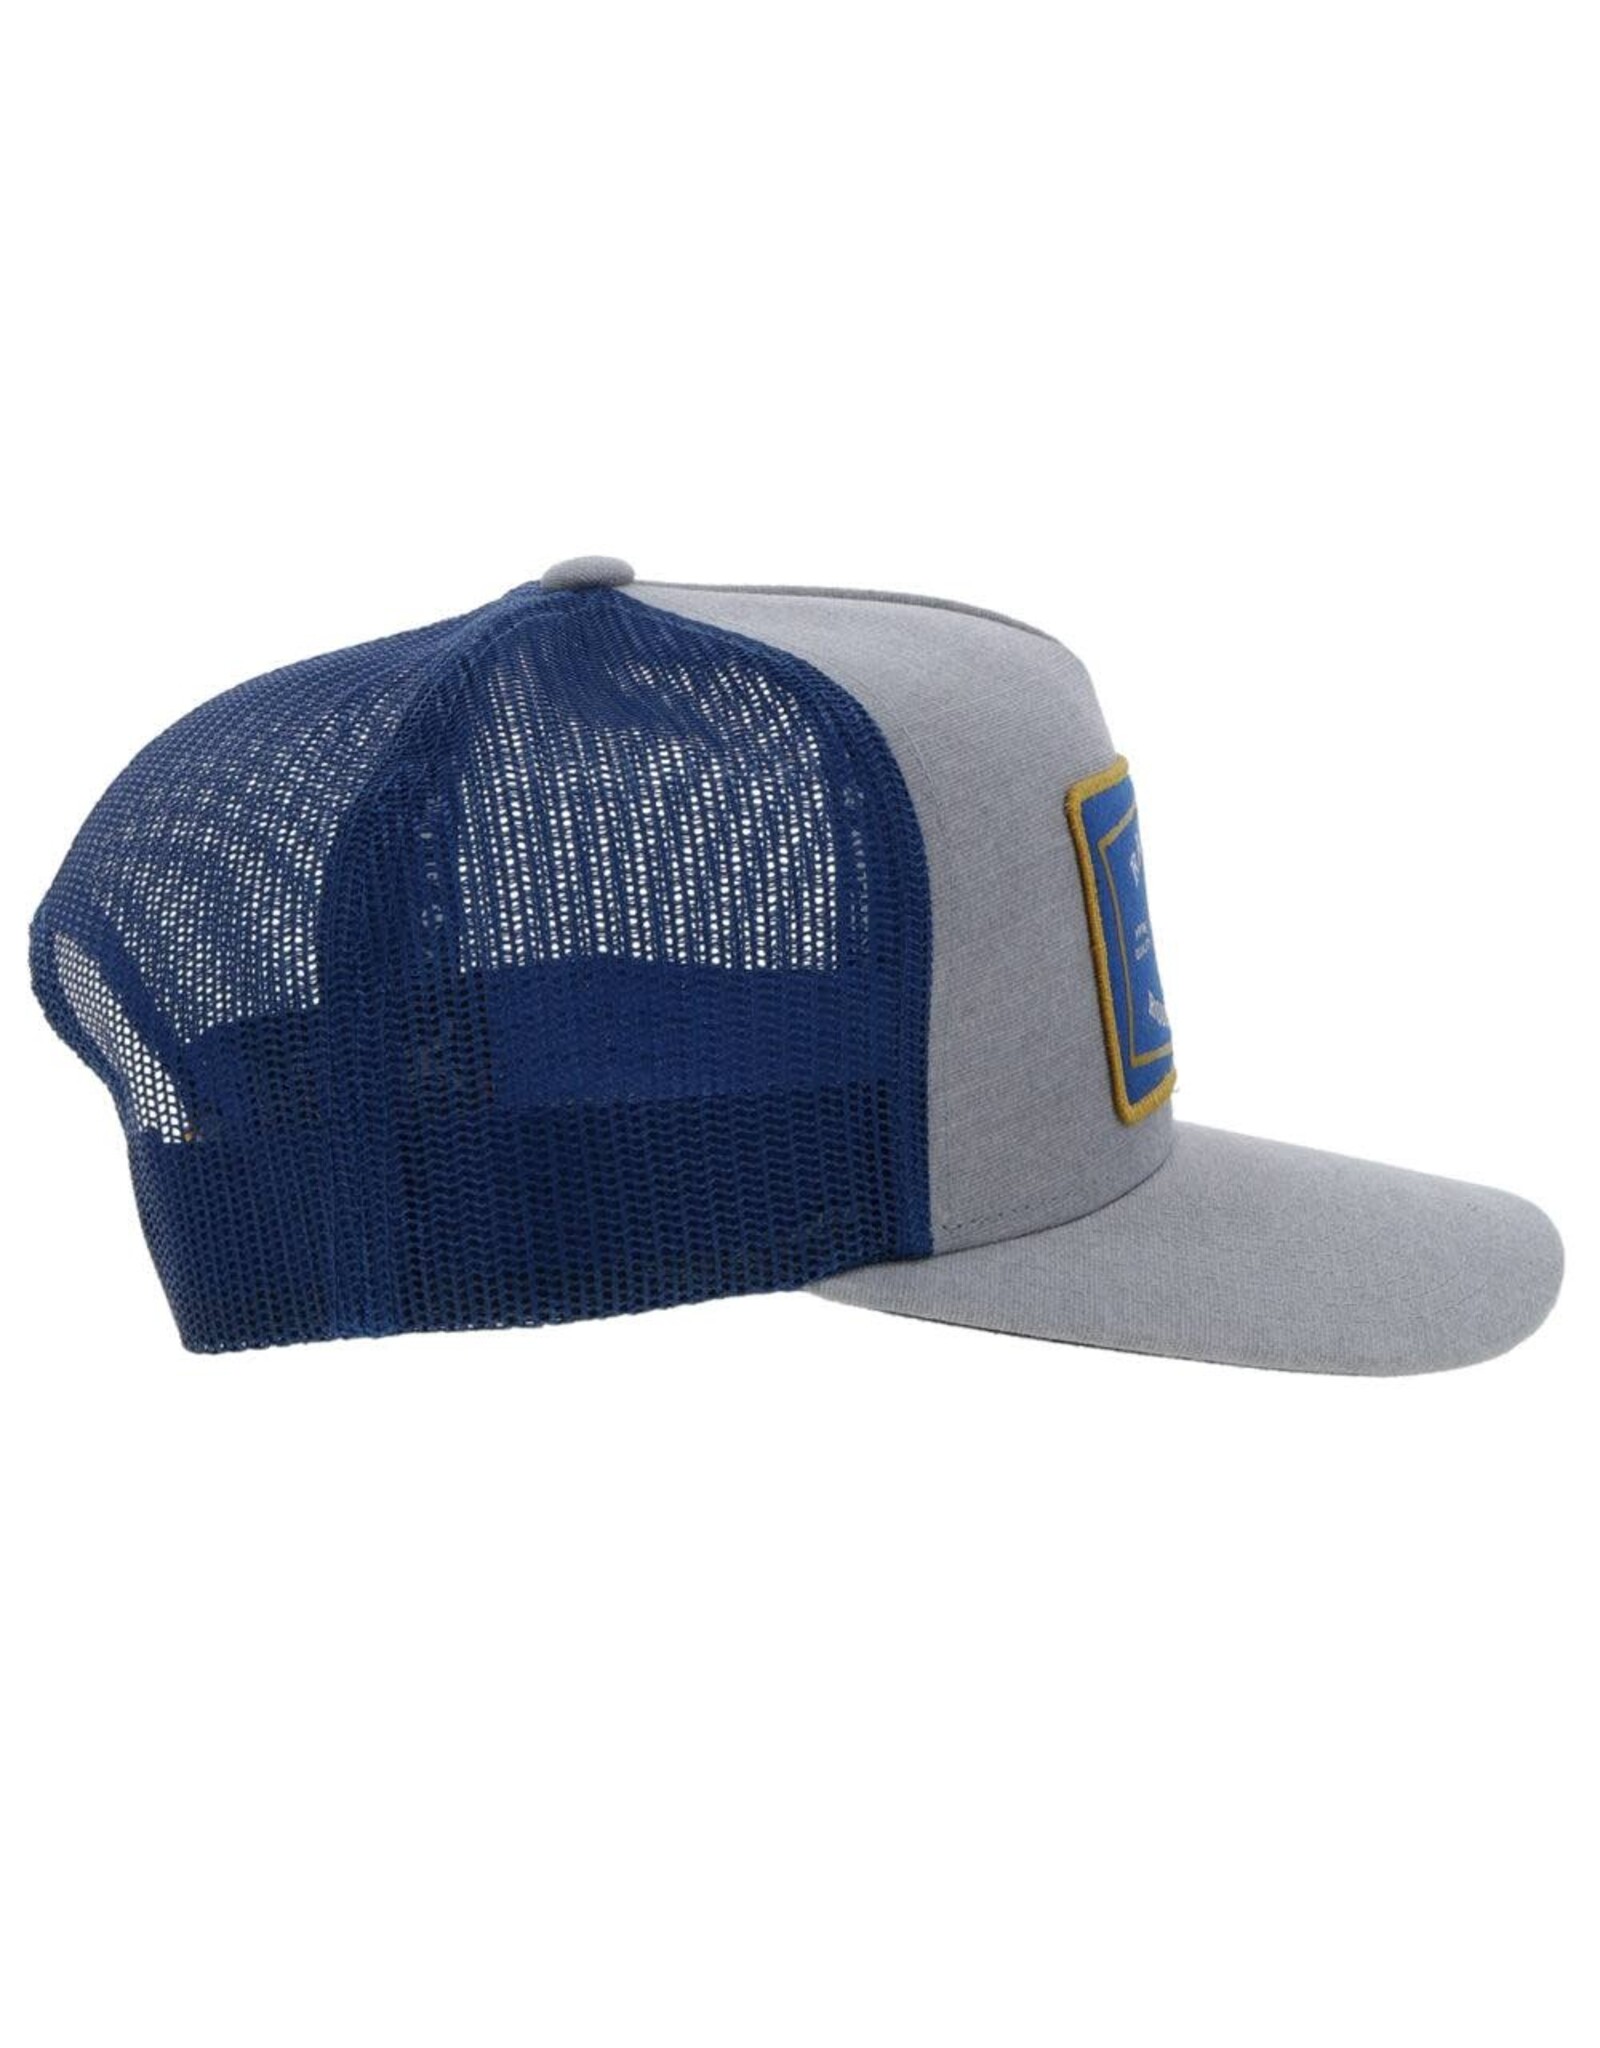 Hooey Brands Hat "Rank Stock" Grey